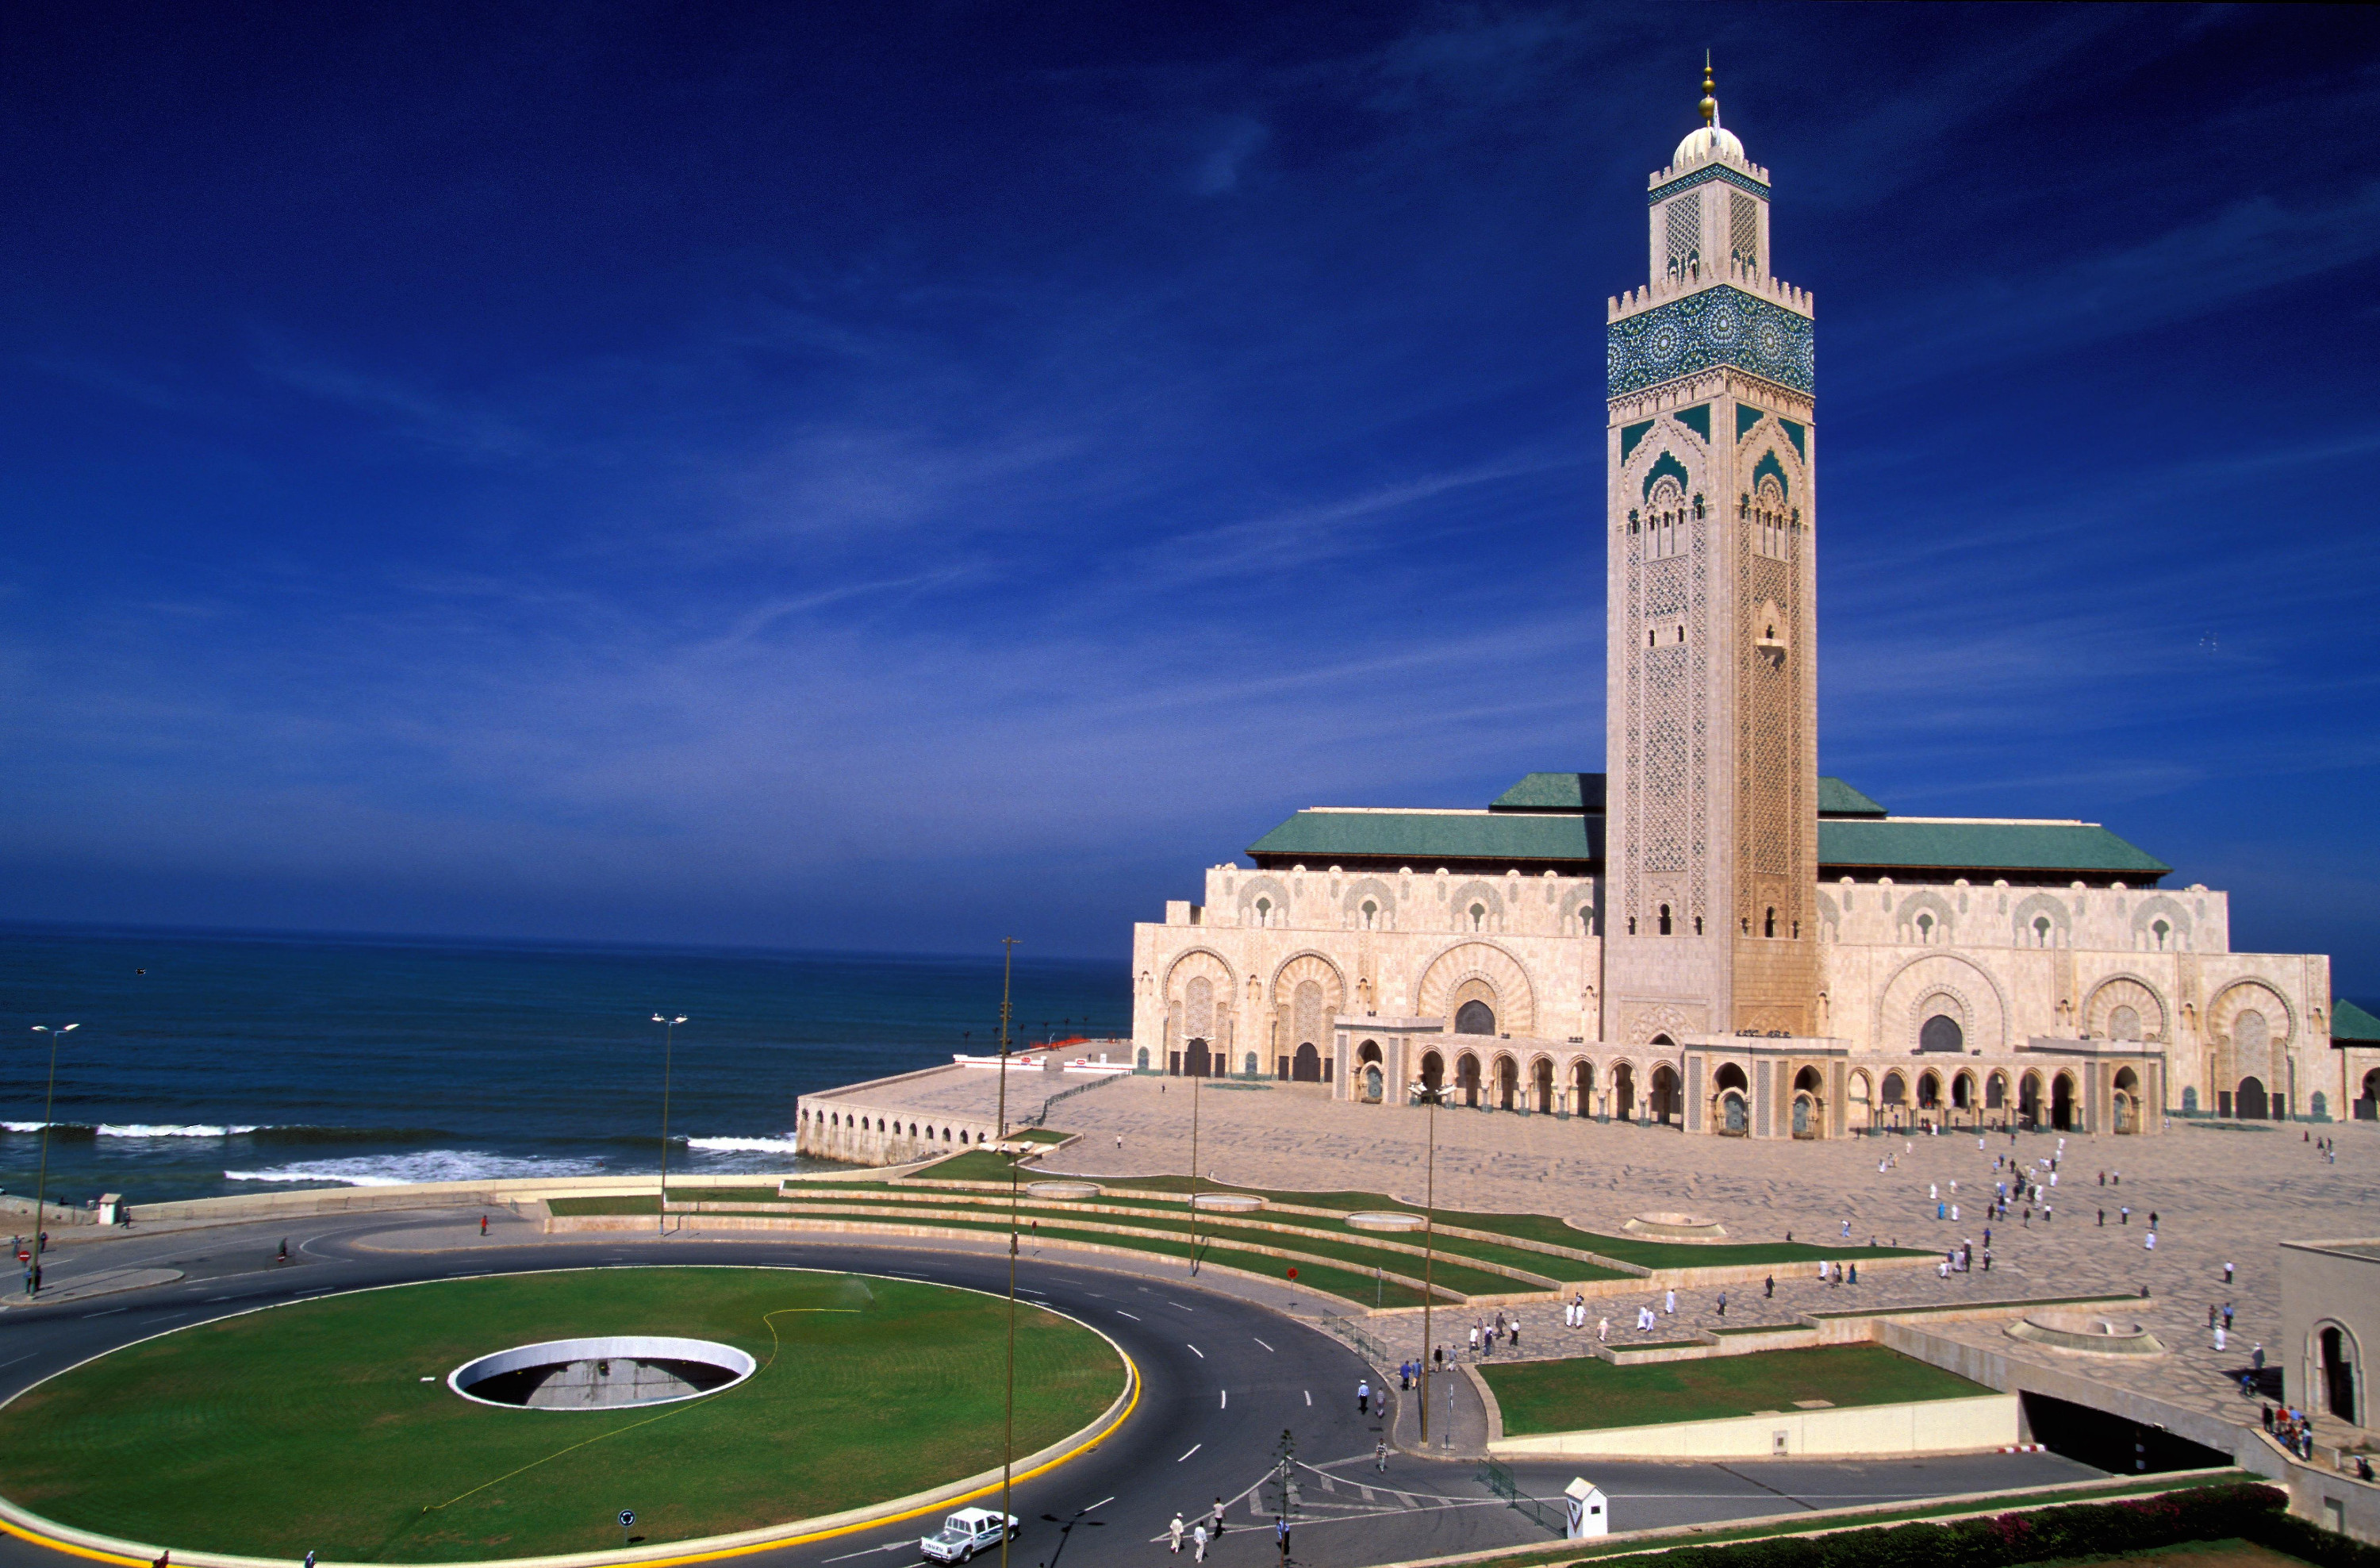 Resultado de imagen para hassan ii mosque morocco